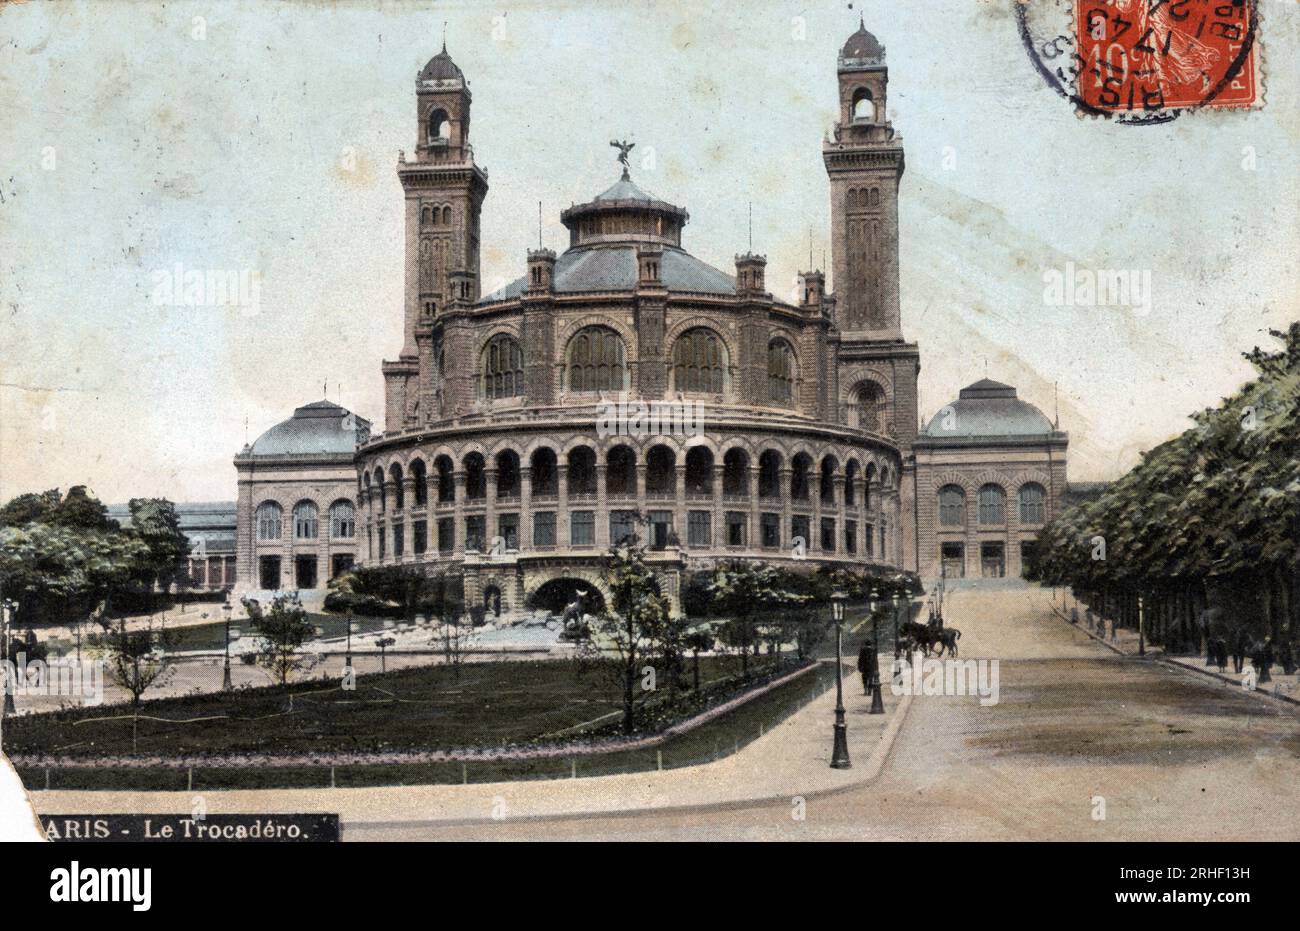 Paris : vue exterieure du palais du Trocadero - Carte postale datee 1908 Stock Photo